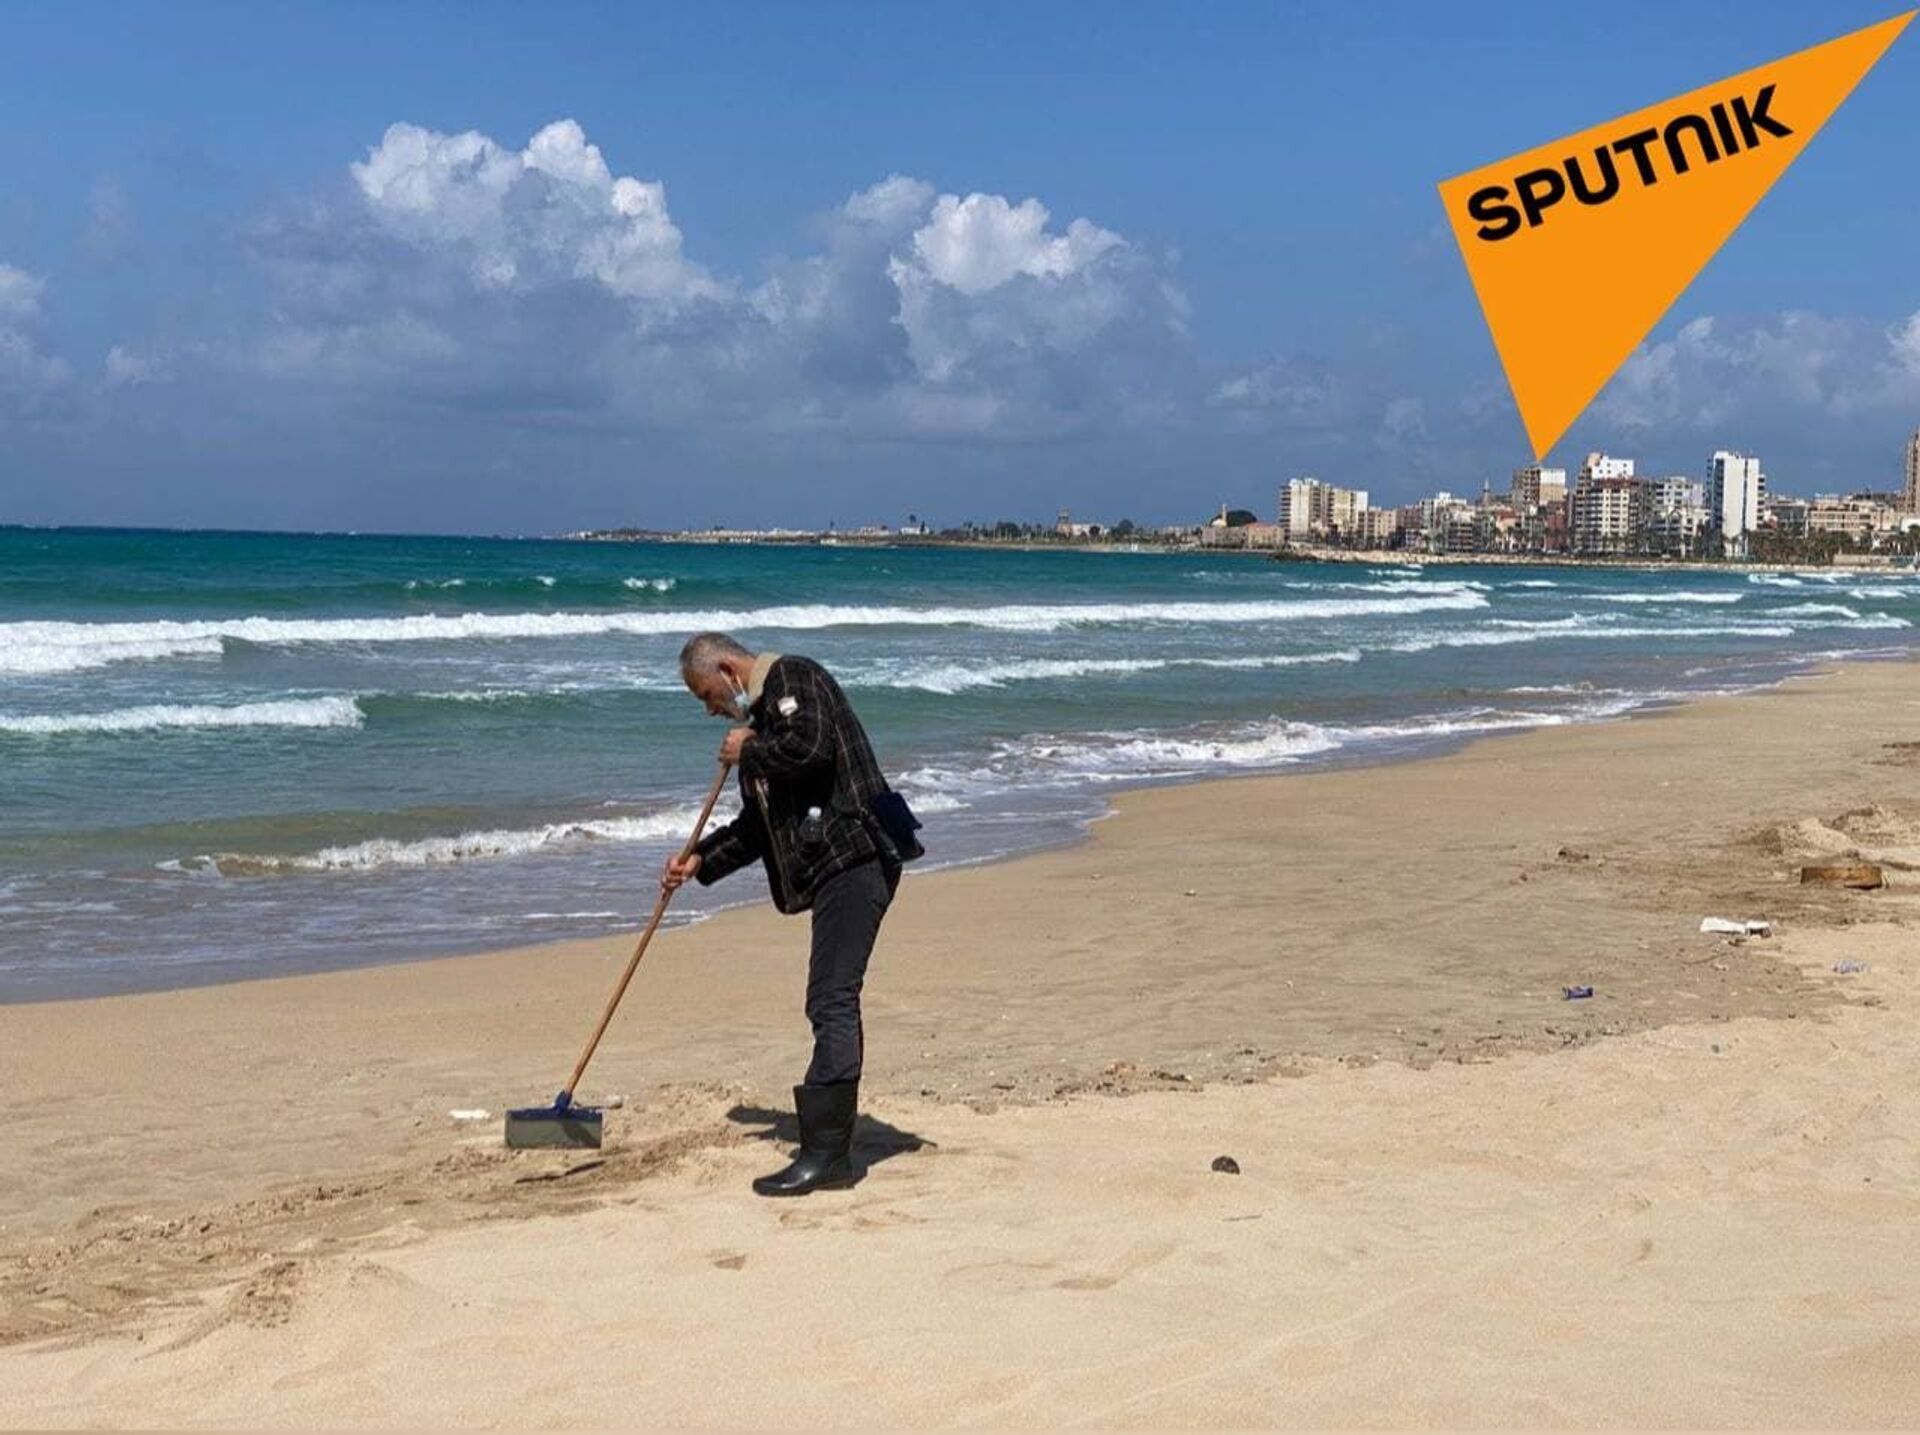 نشطاء لبنانيون يحاولون تنظيف شاطئهم من تسرب نفطي مثير للجدل - سبوتنيك عربي, 1920, 10.04.2021